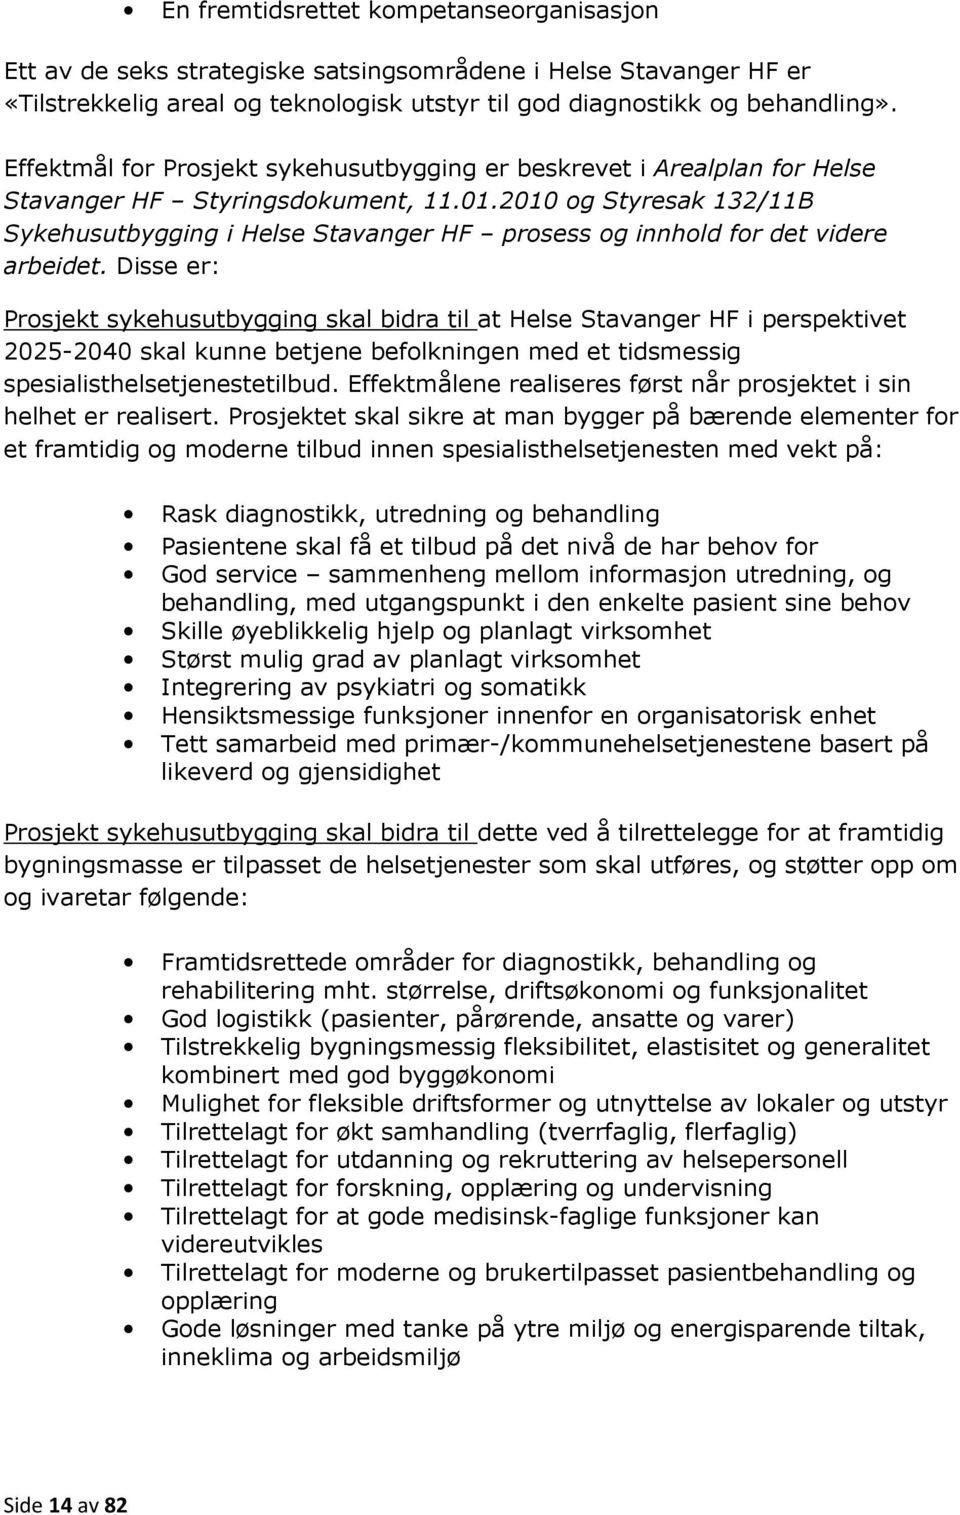 2010 og Styresak 132/11B Sykehusutbygging i Helse Stavanger HF prosess og innhold for det videre arbeidet.